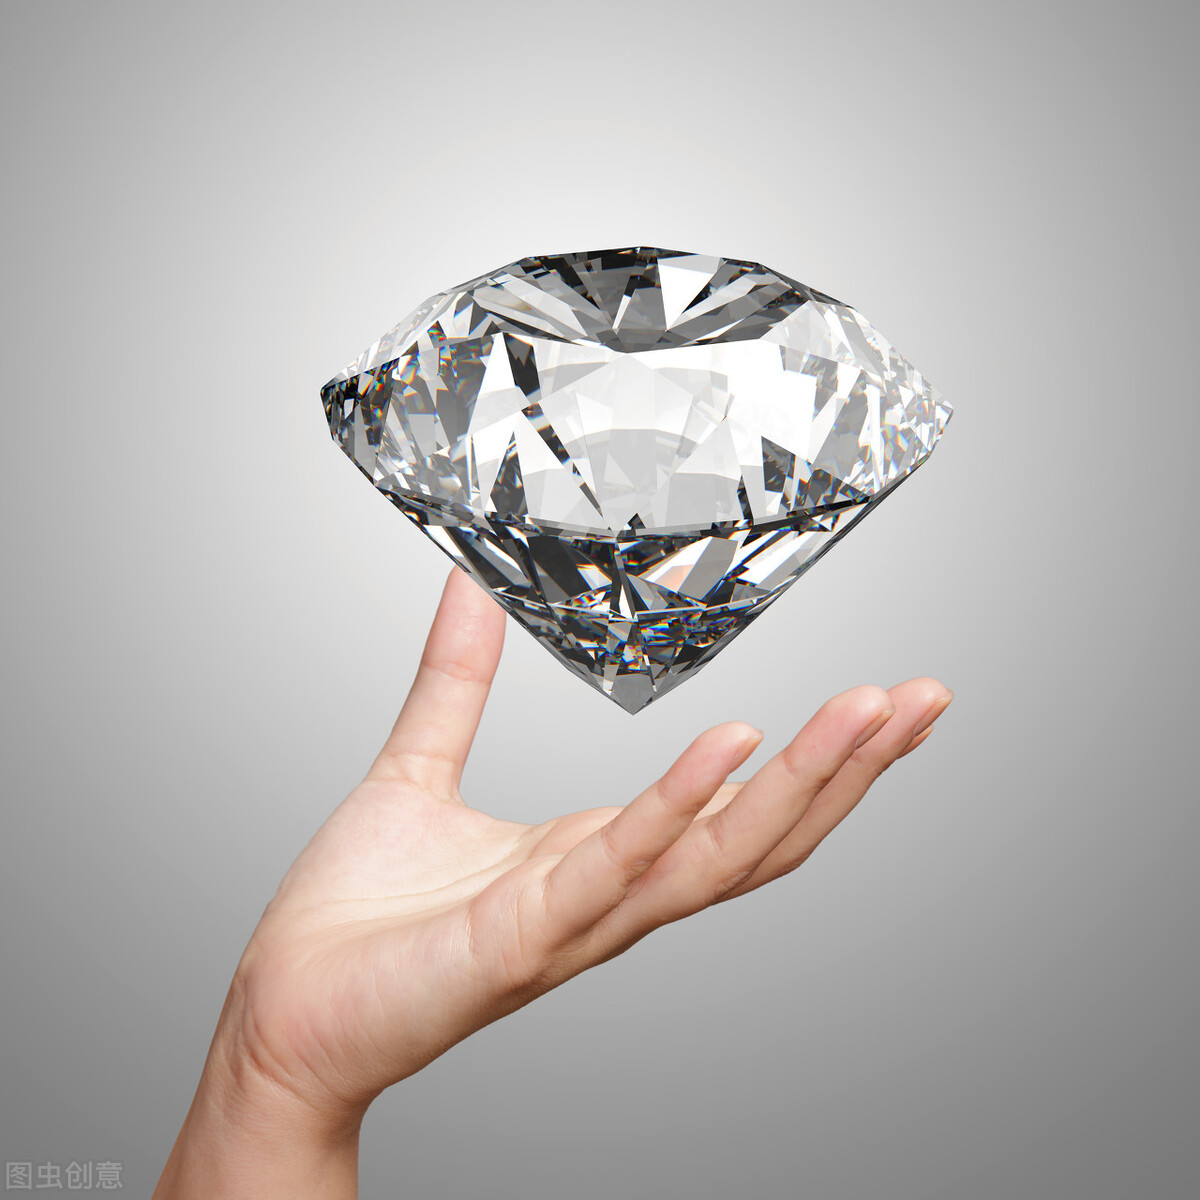 钻石diamond一词,出自希腊语adamas,意思是坚硬,不可驯服